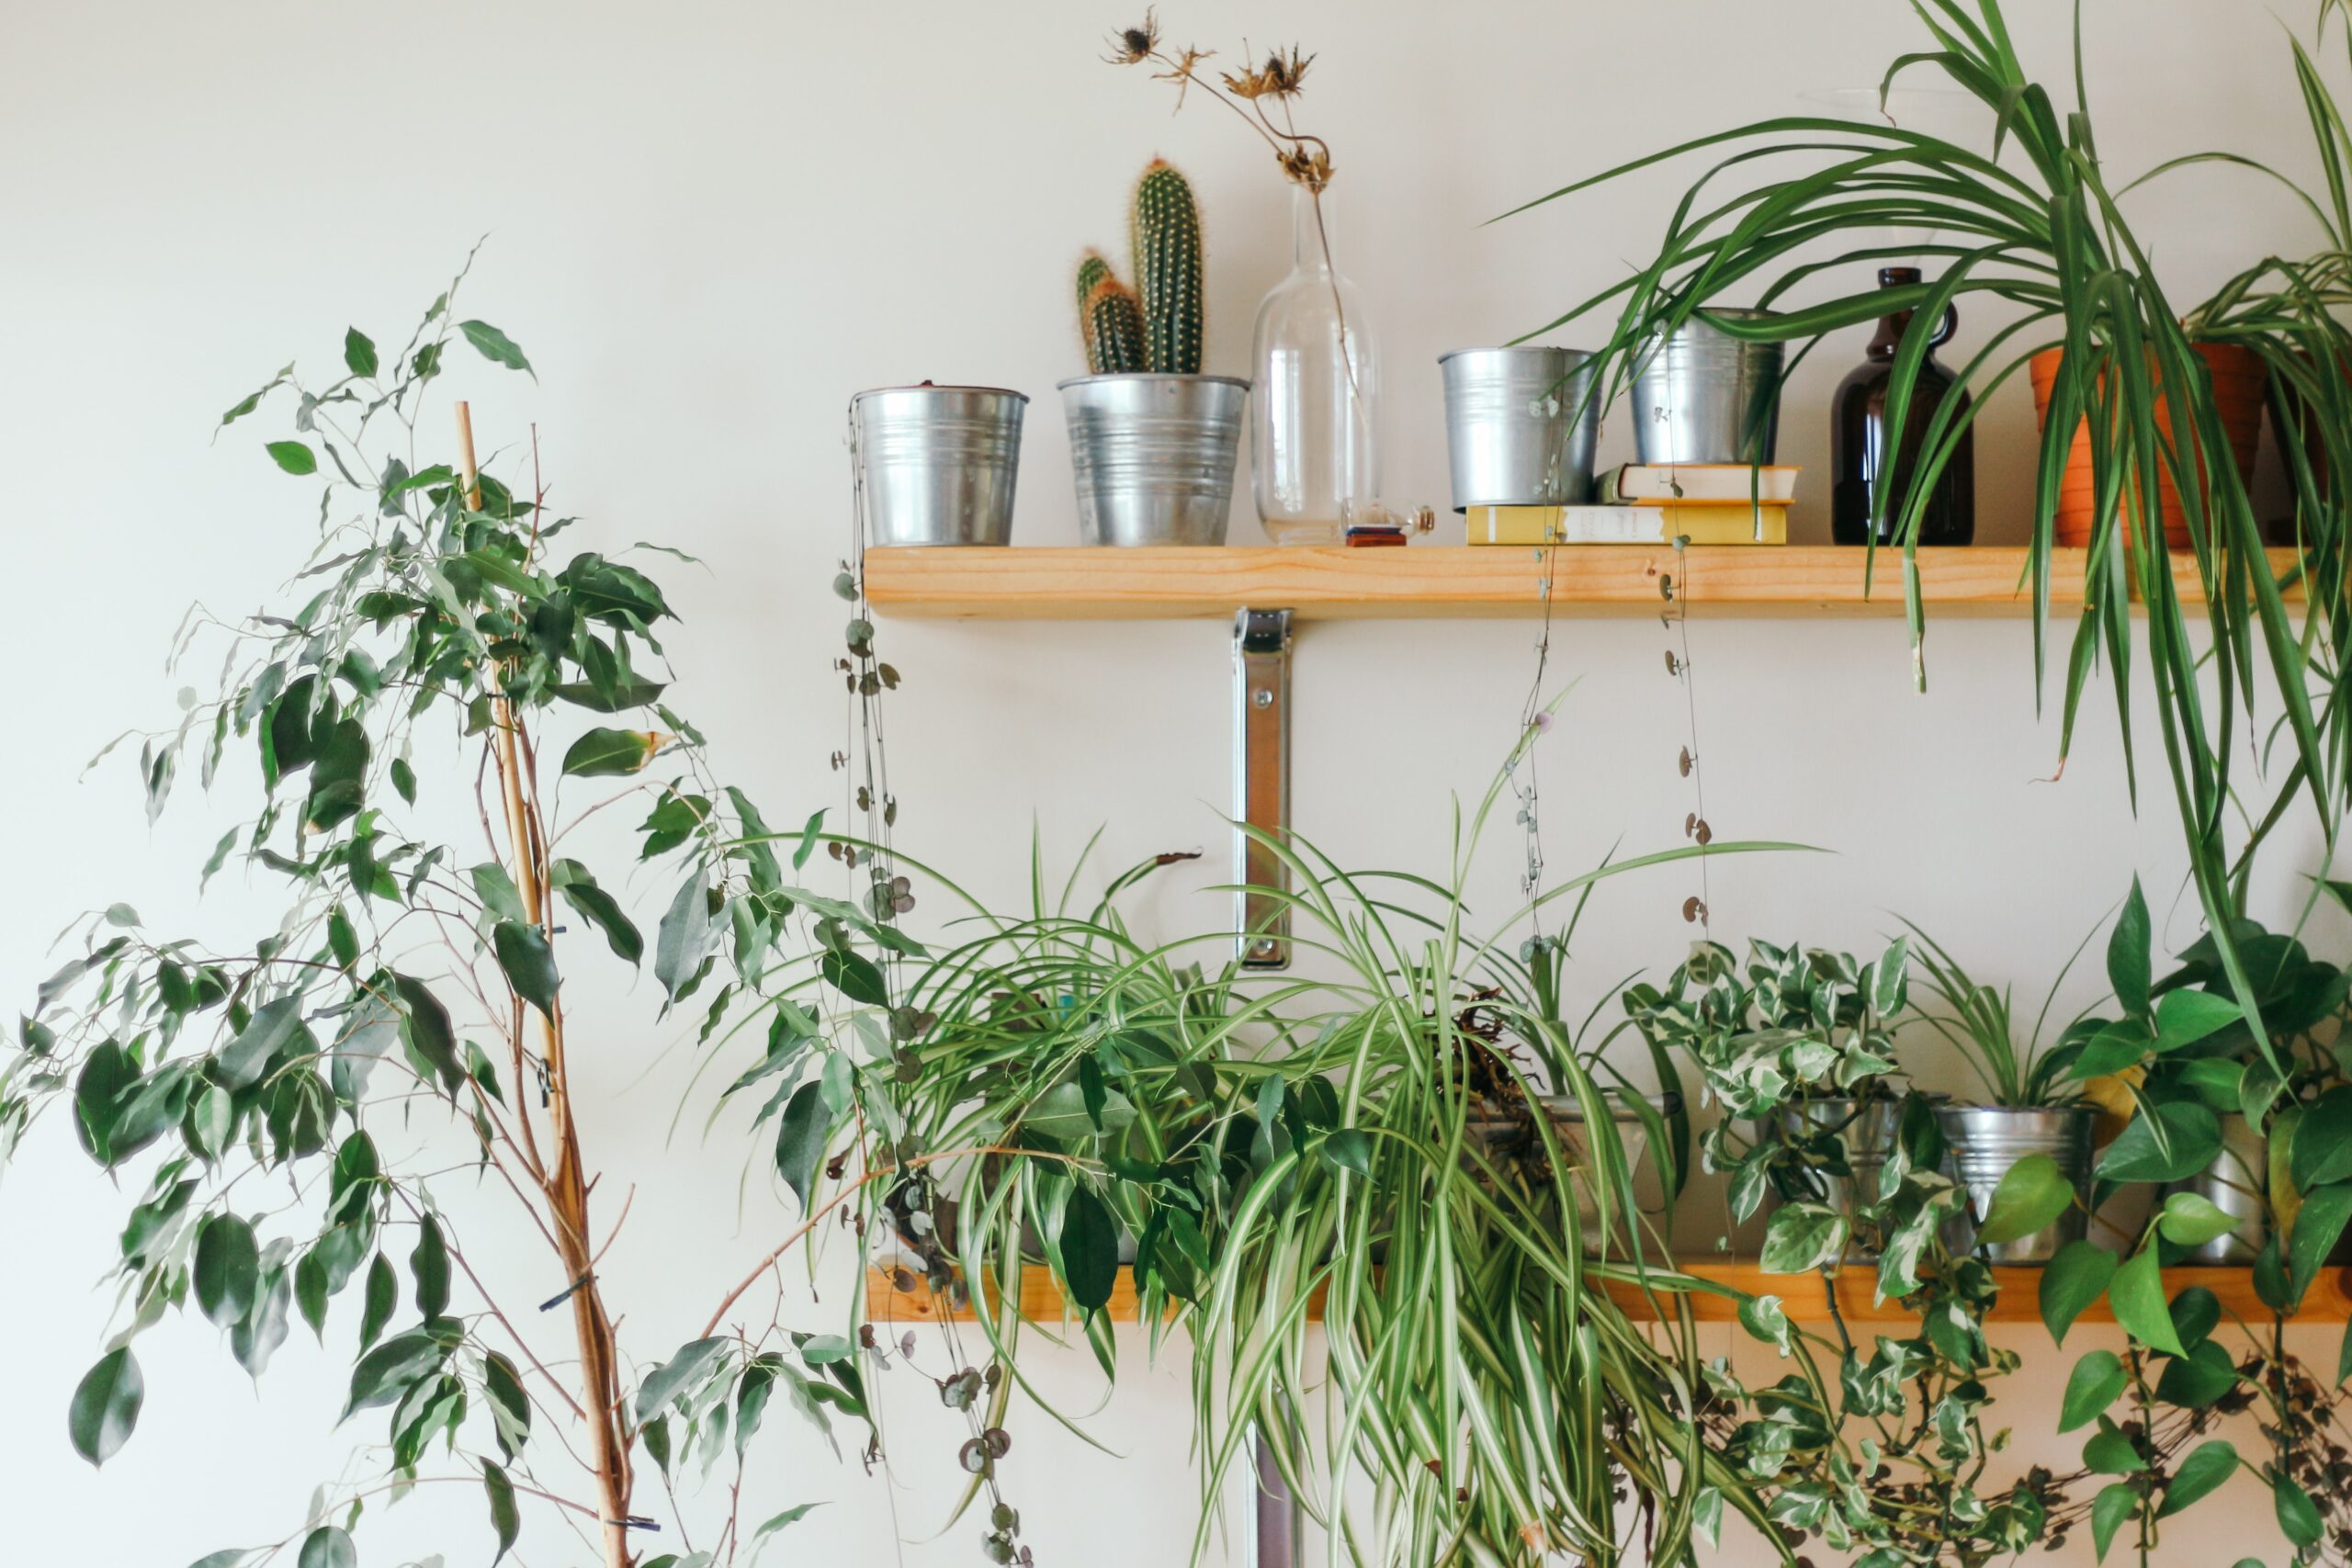 plants in pots on wall shelf